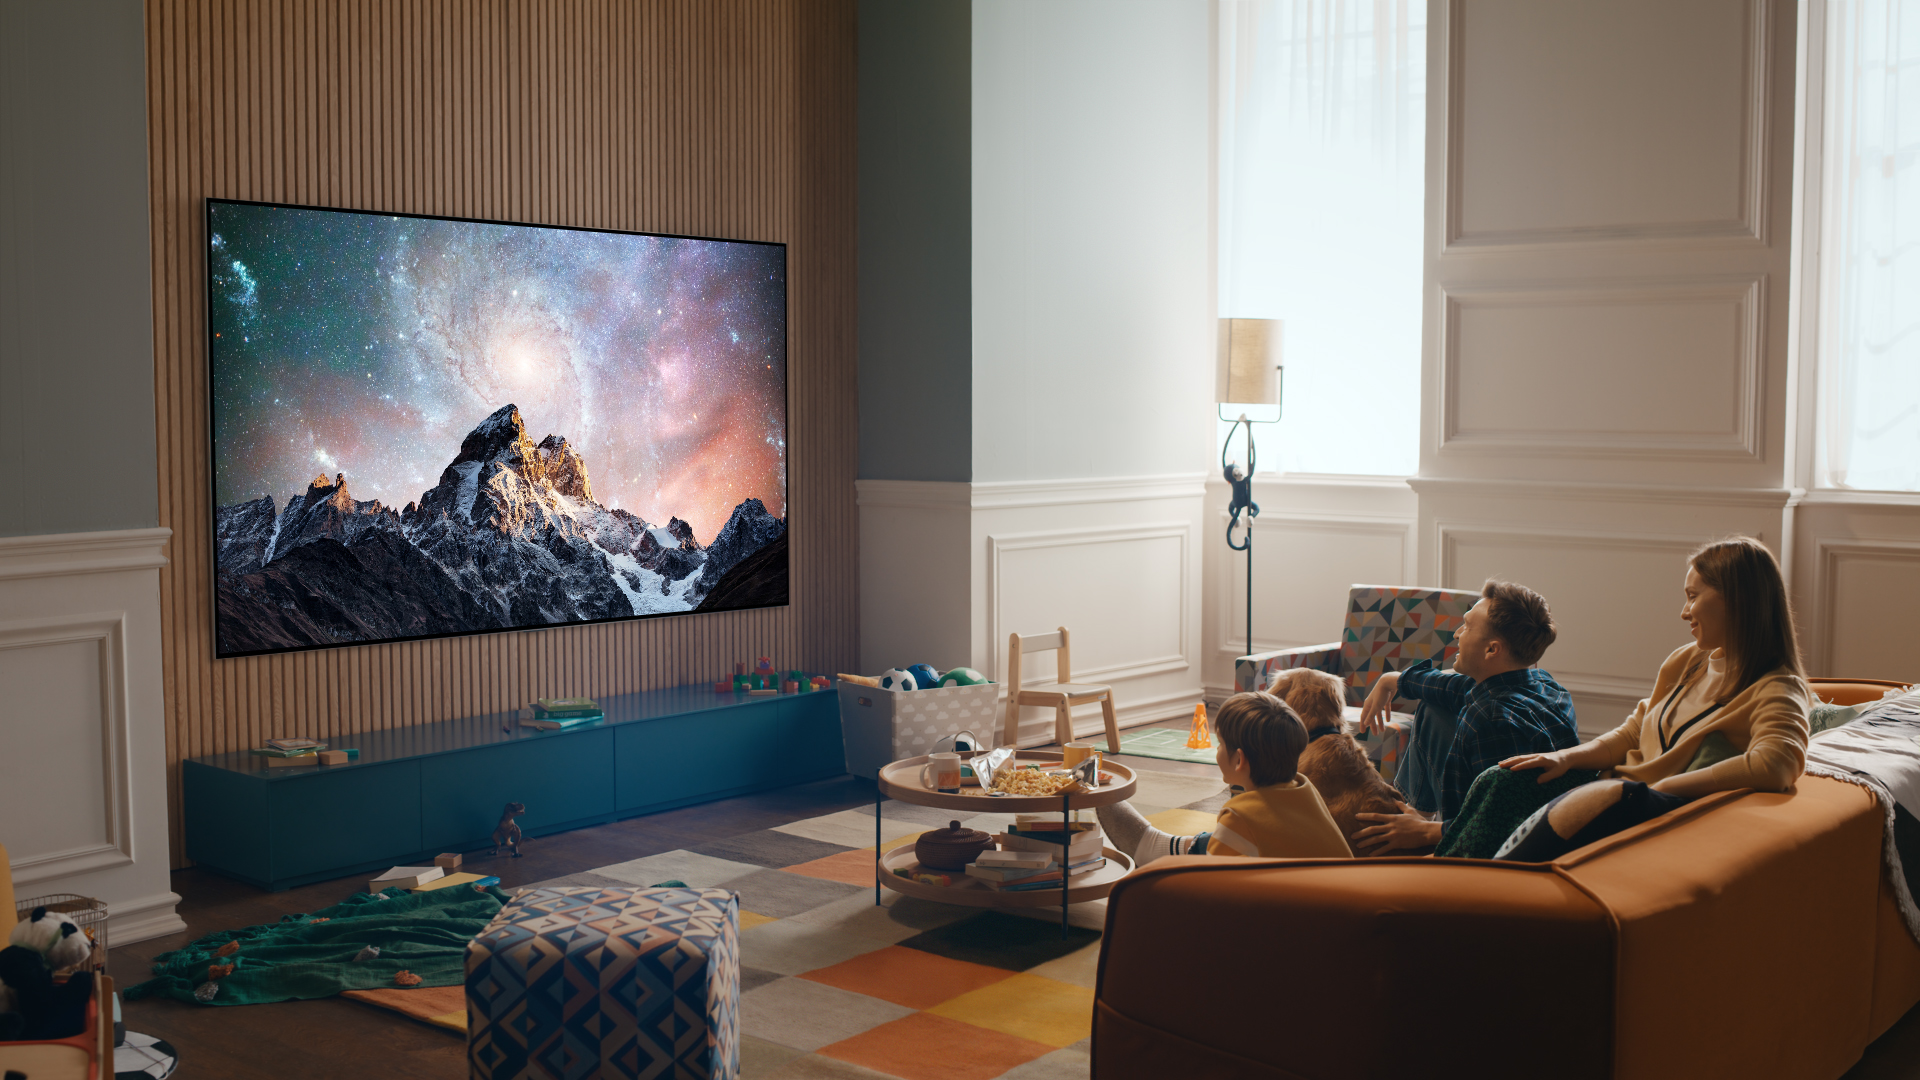 مزيج الفن والتقنيات المتطورة في تلفزيونات OLED المتميزة